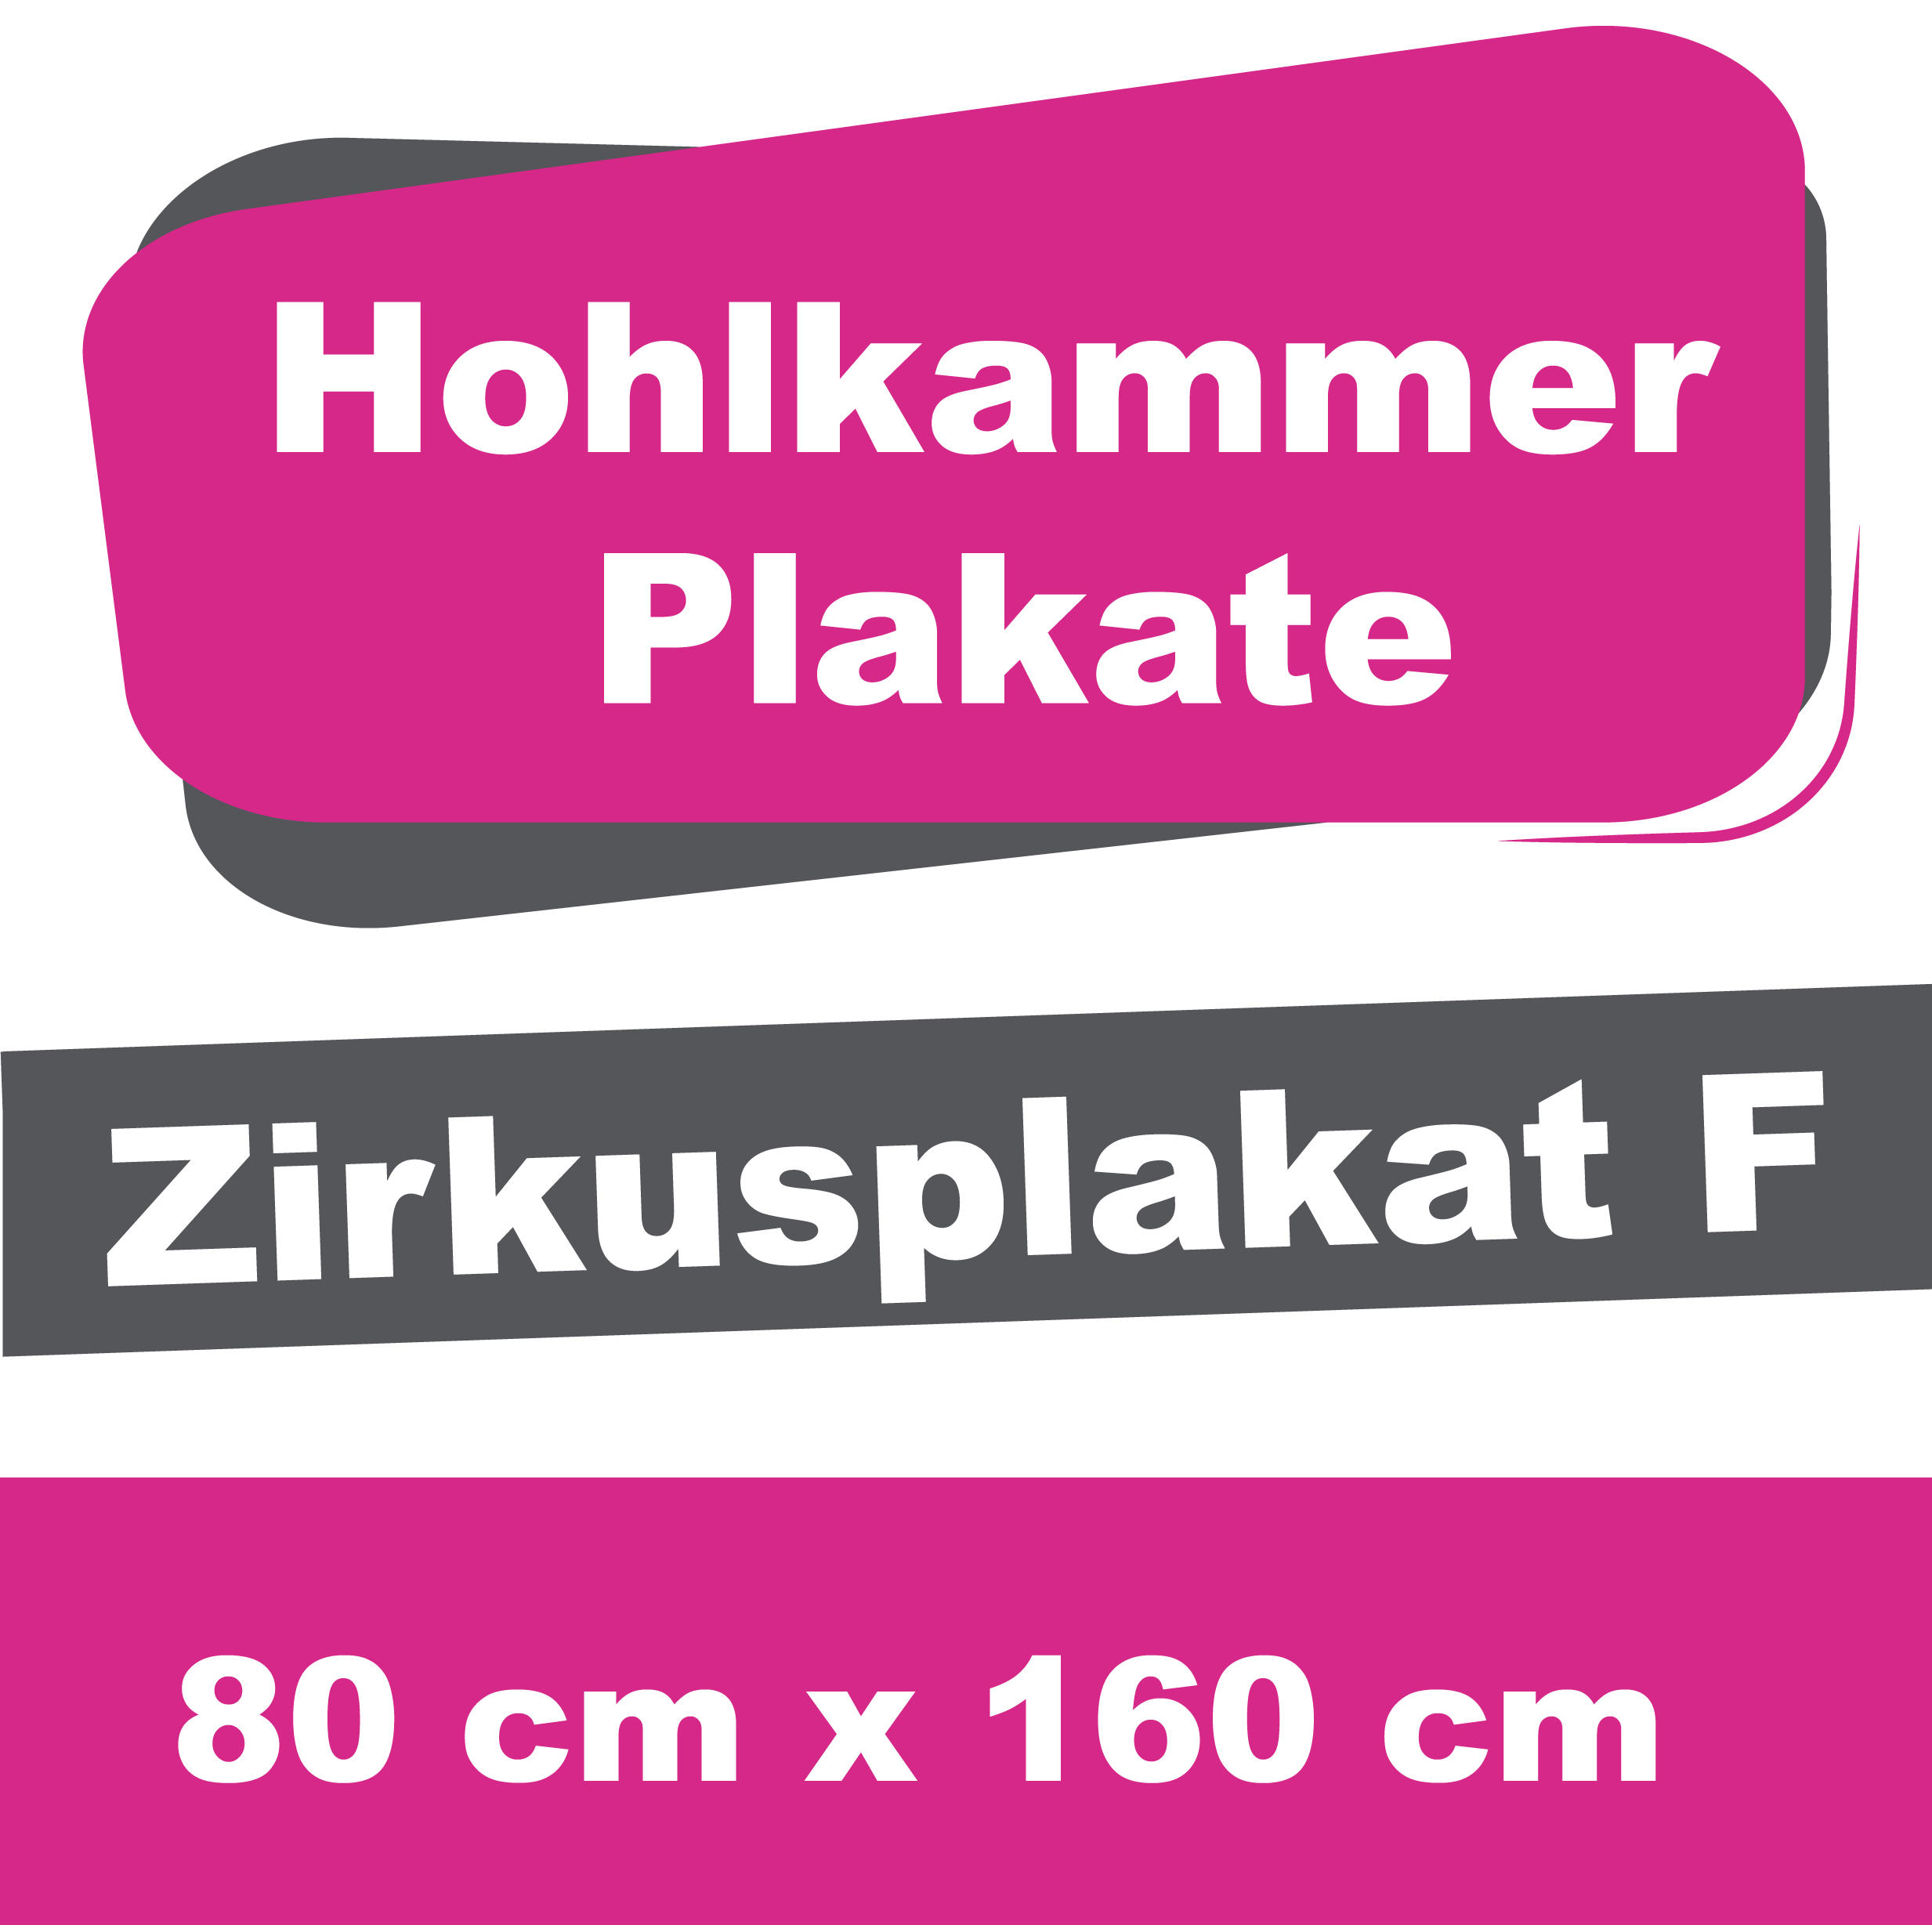 Wahl-/Event-/Zirkusplakat F - Hohlkammerplakate 80 x 160 cm